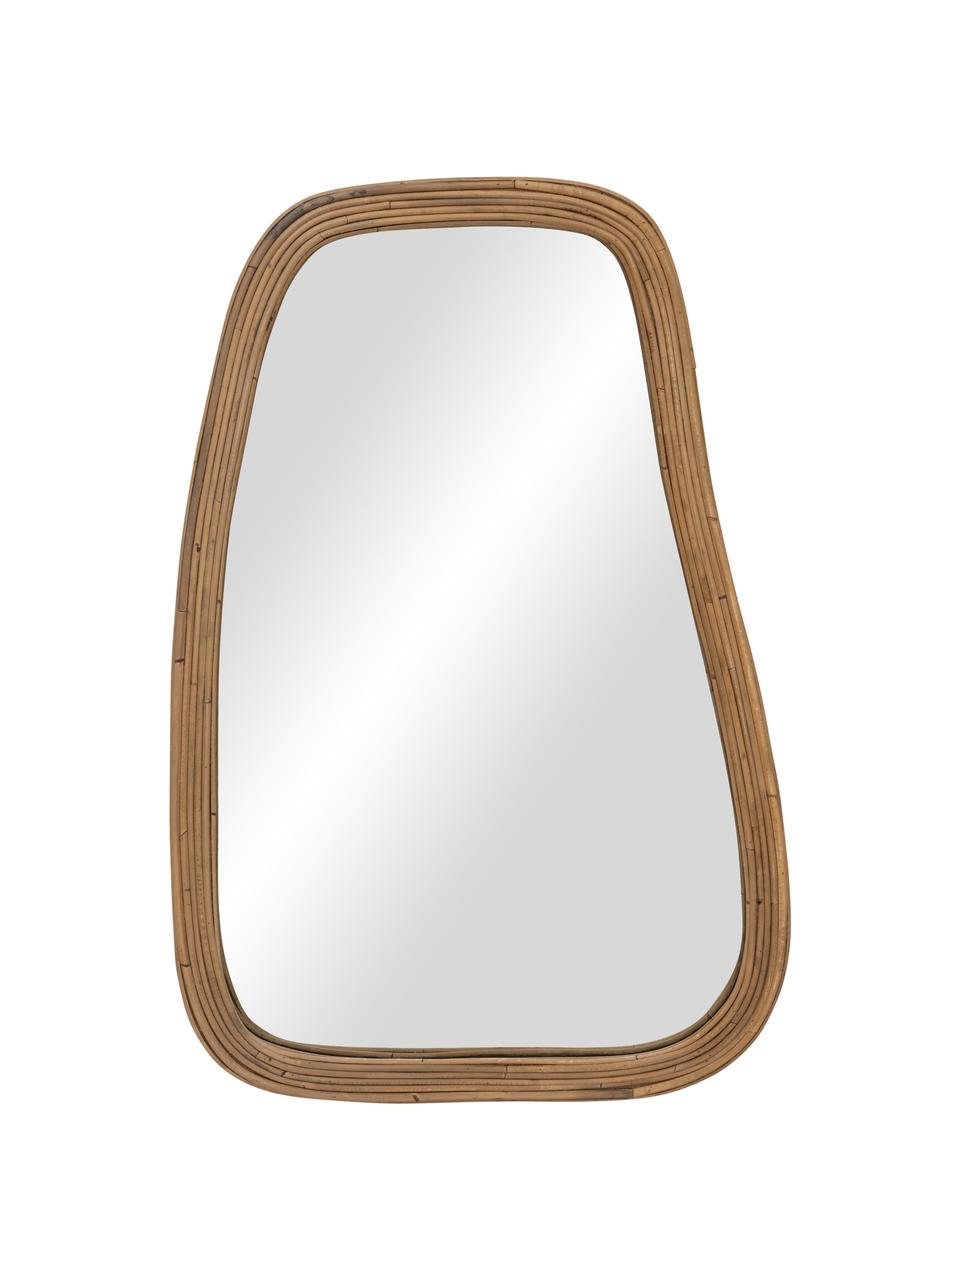 Specchio pendente fatto a mano con cornice in rattan Organic, Cornice: rattan, Superficie dello specchio: lastra di vetro, Marrone chiaro, Larg. 61 x Alt. 120 cm